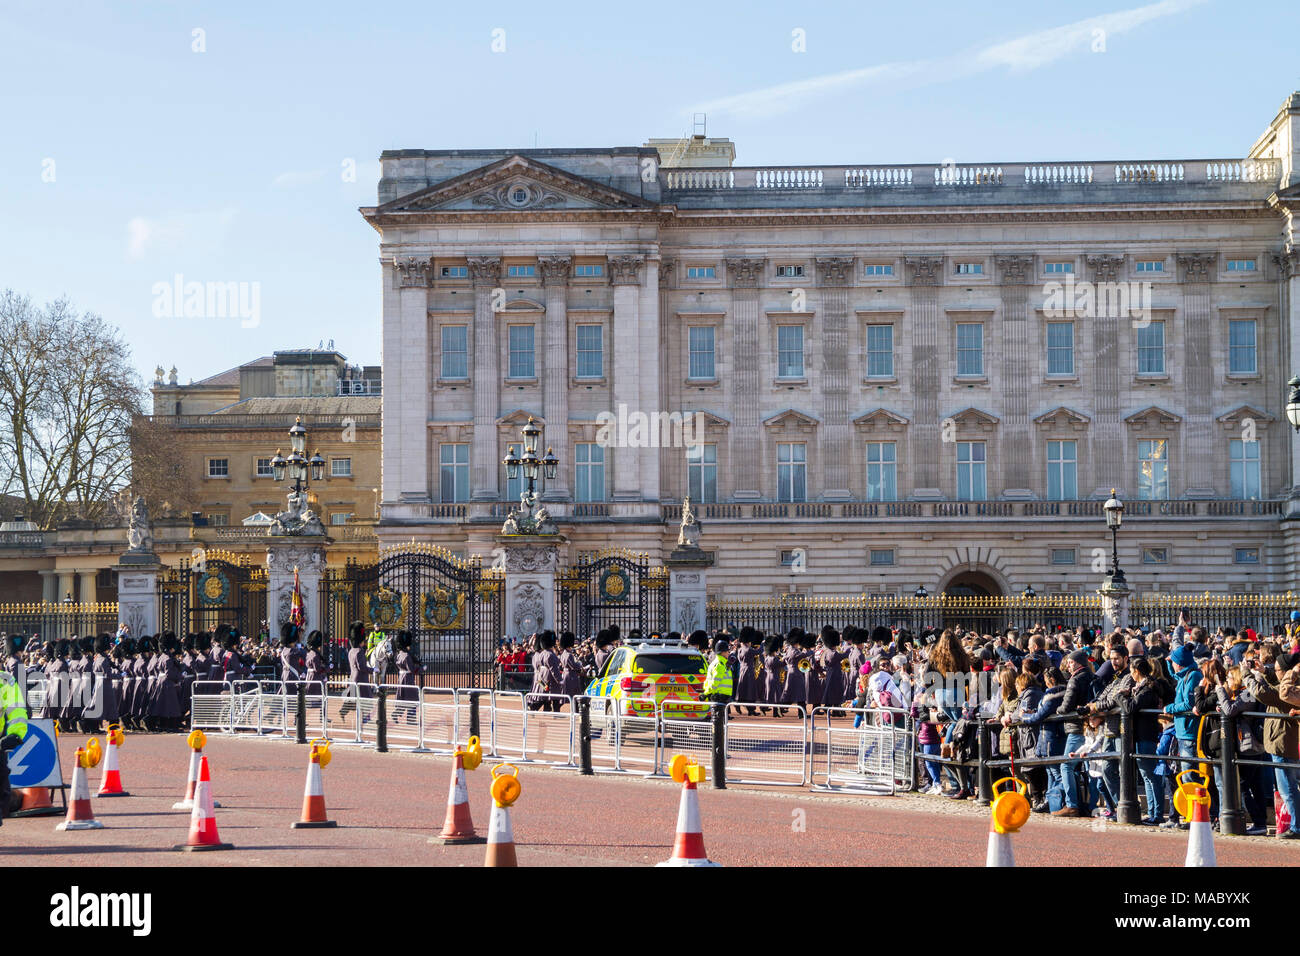 Folle si radunarono a guardare il Queens Guardia, Guardia reale nel loro inverno uniformi, di cambiare la sfilata delle Guardie a Buckingham Palace, London REGNO UNITO Foto Stock